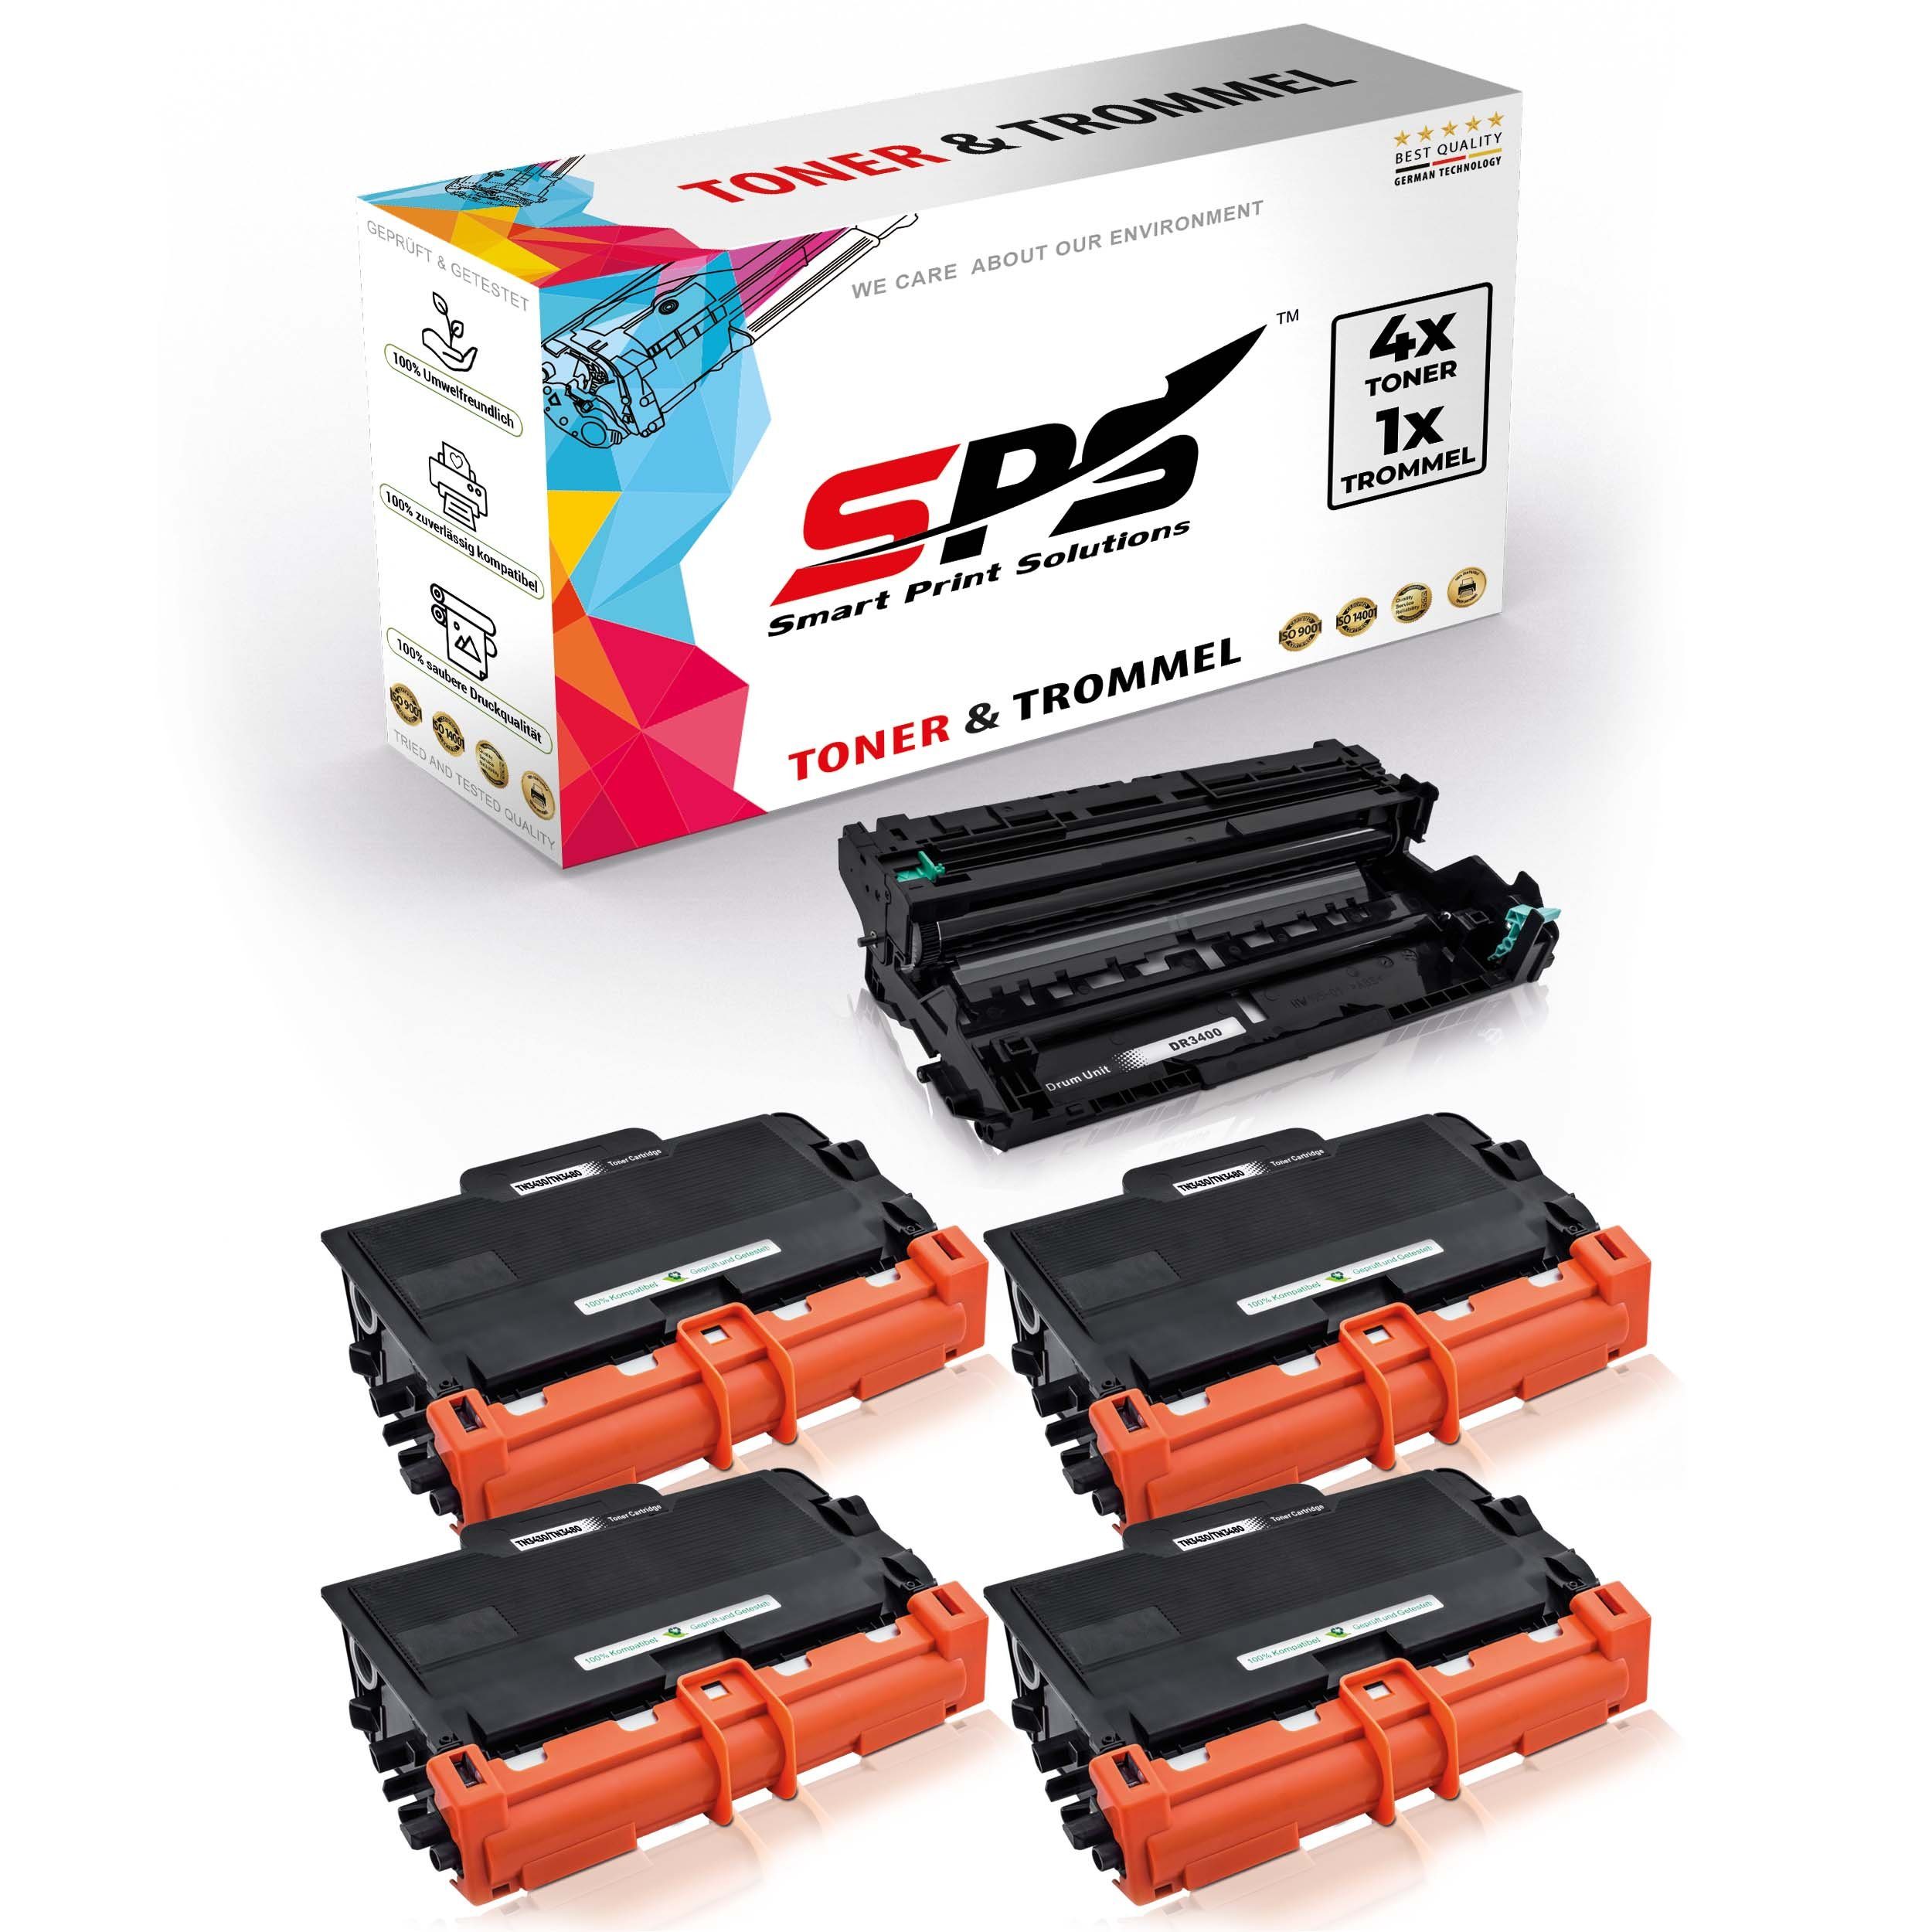 SPS Tonerkartusche Kompatibel für Brother HL-L5200 DR-3400 TN-3430, (5er Pack)